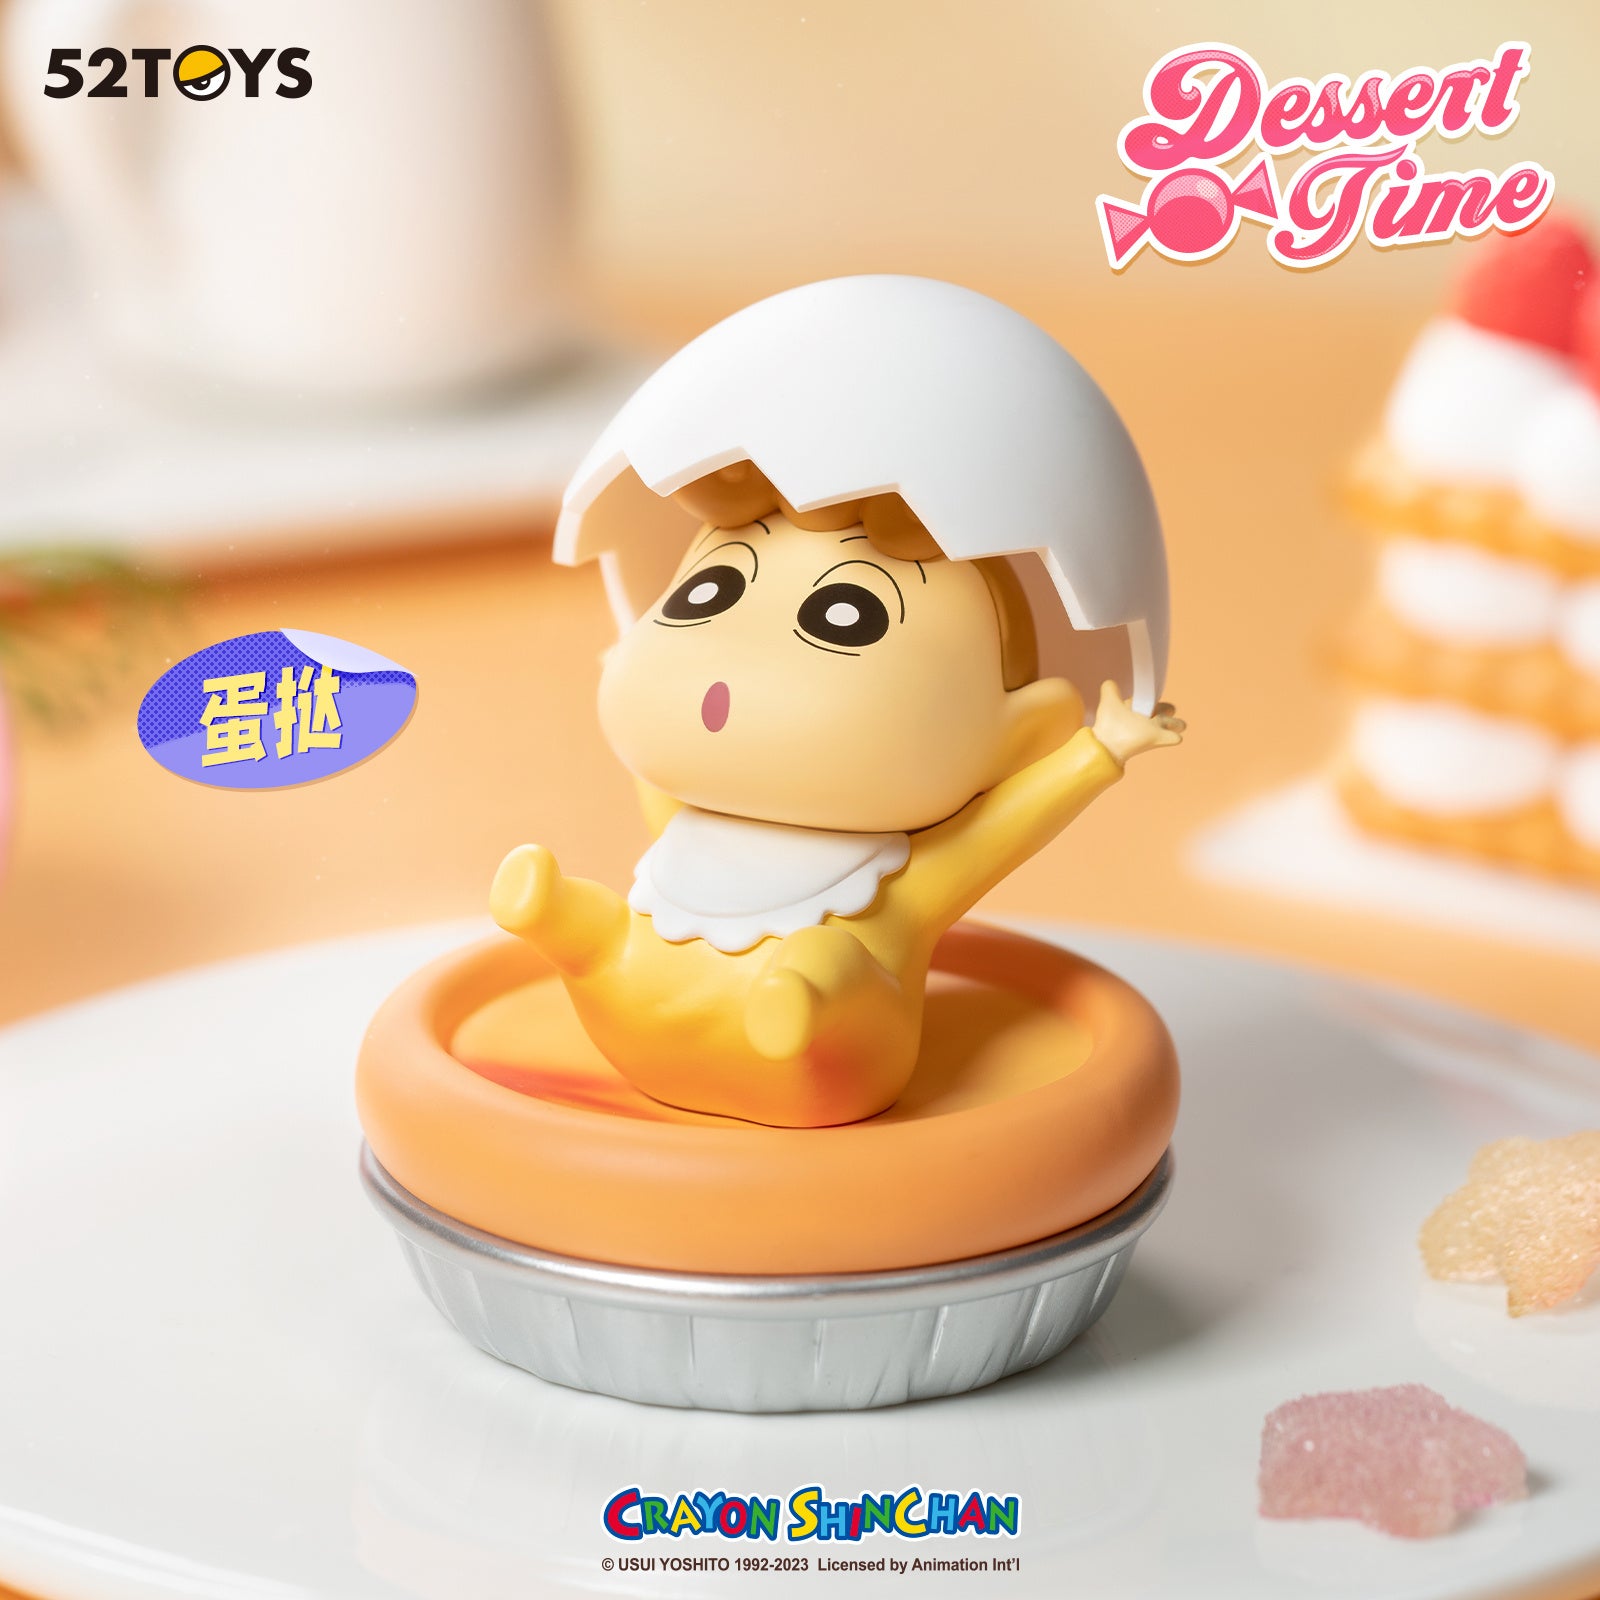 [52TOYS] CRAYON SHIN-CHAN - Dessert Time Blind Box